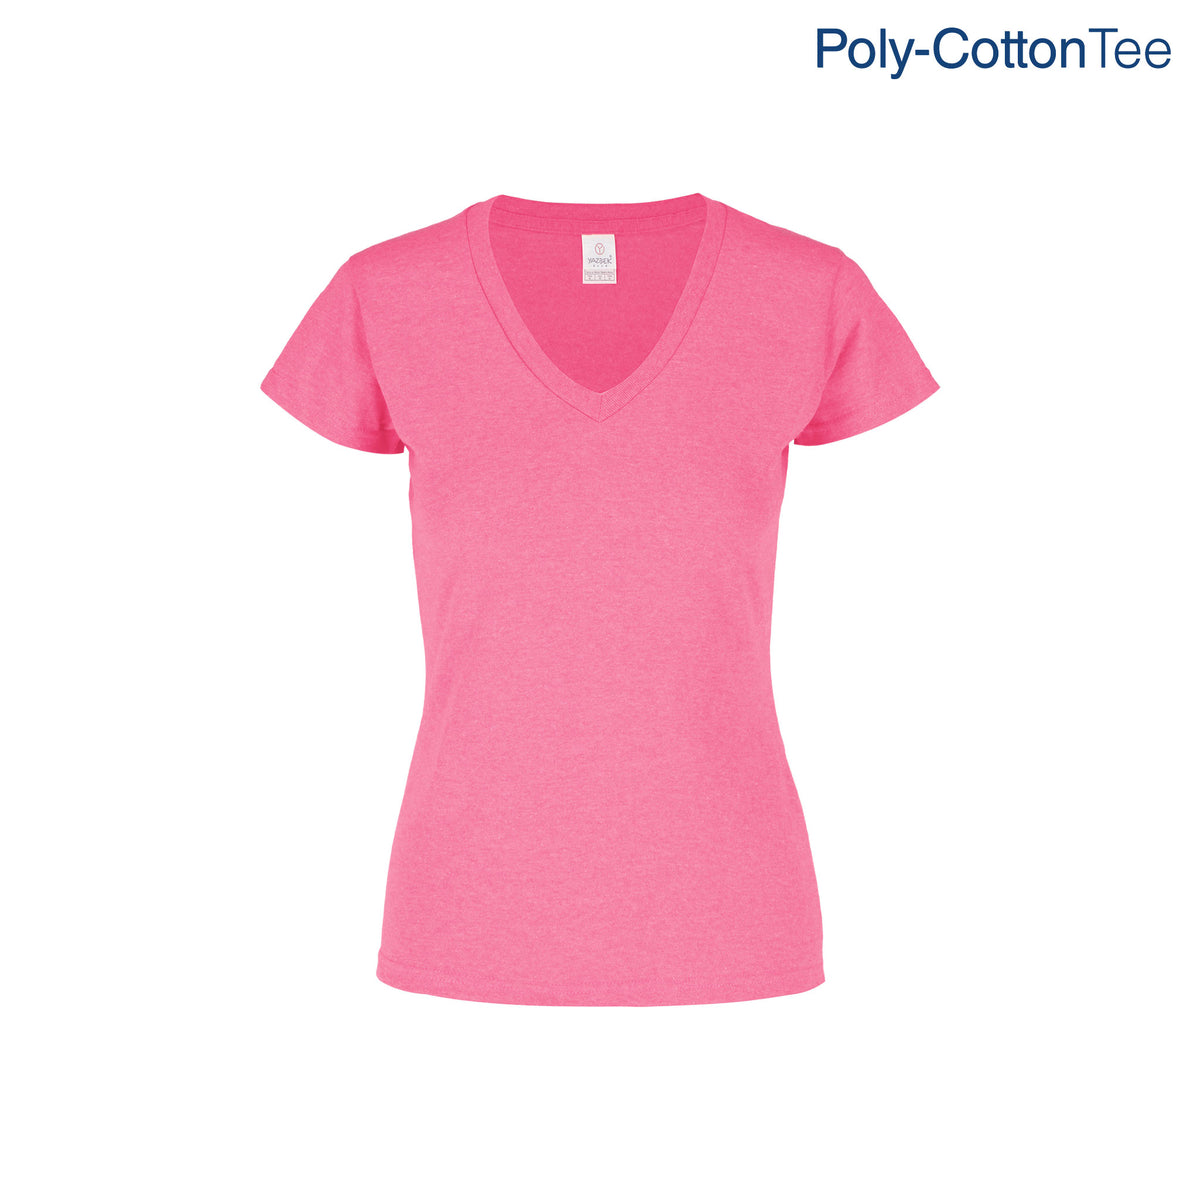 Women's V-Neck Short Sleeve Silhouette T-Shirt (Neon Pink) – Yazbek USA Mint